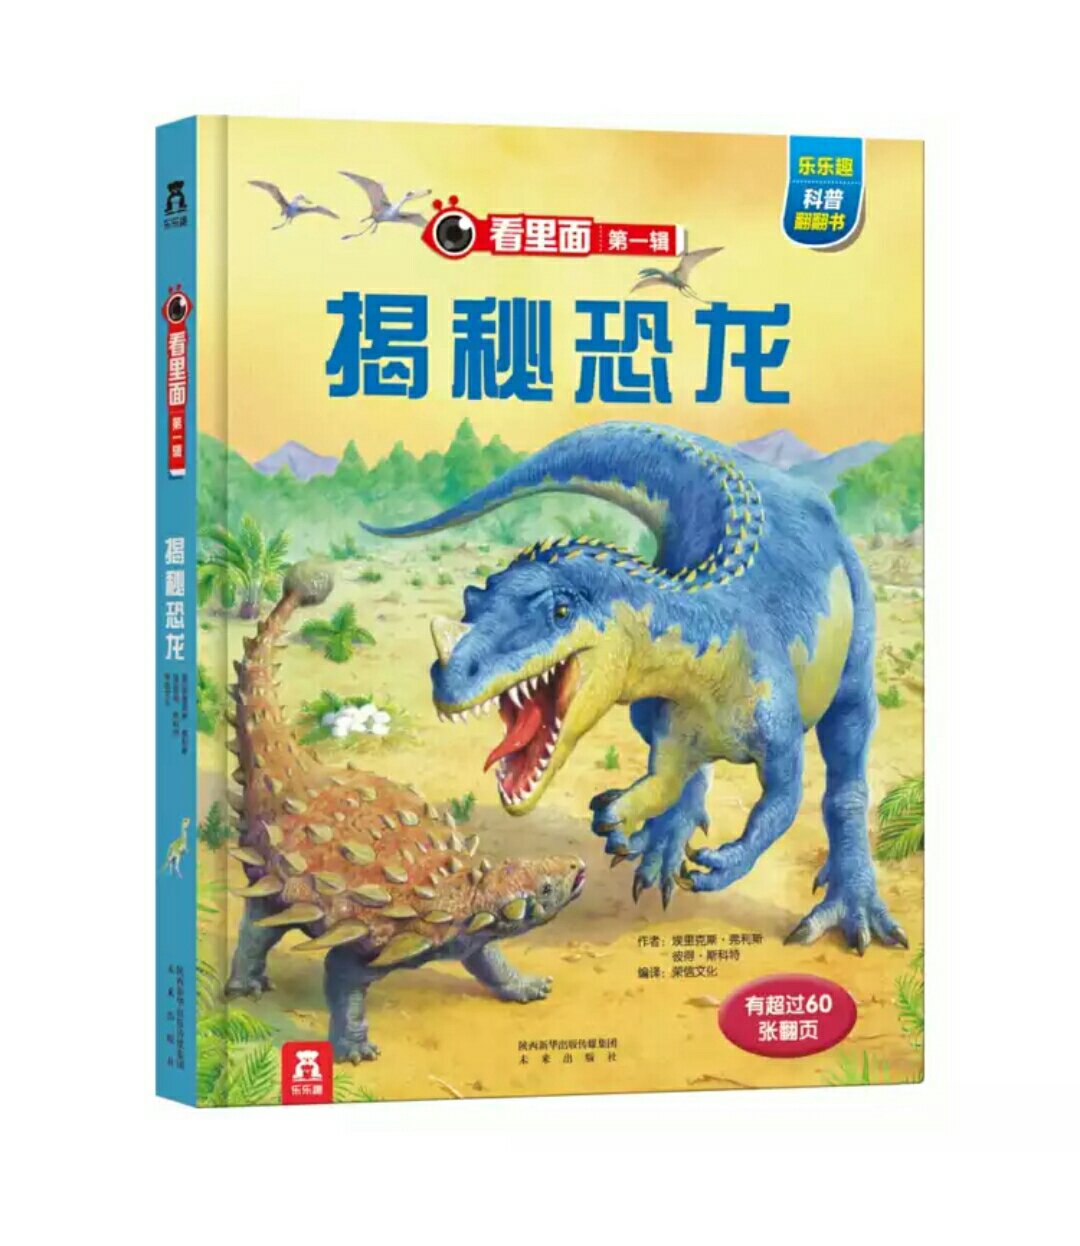 活动的时候买的，孩子很喜欢恐龙。